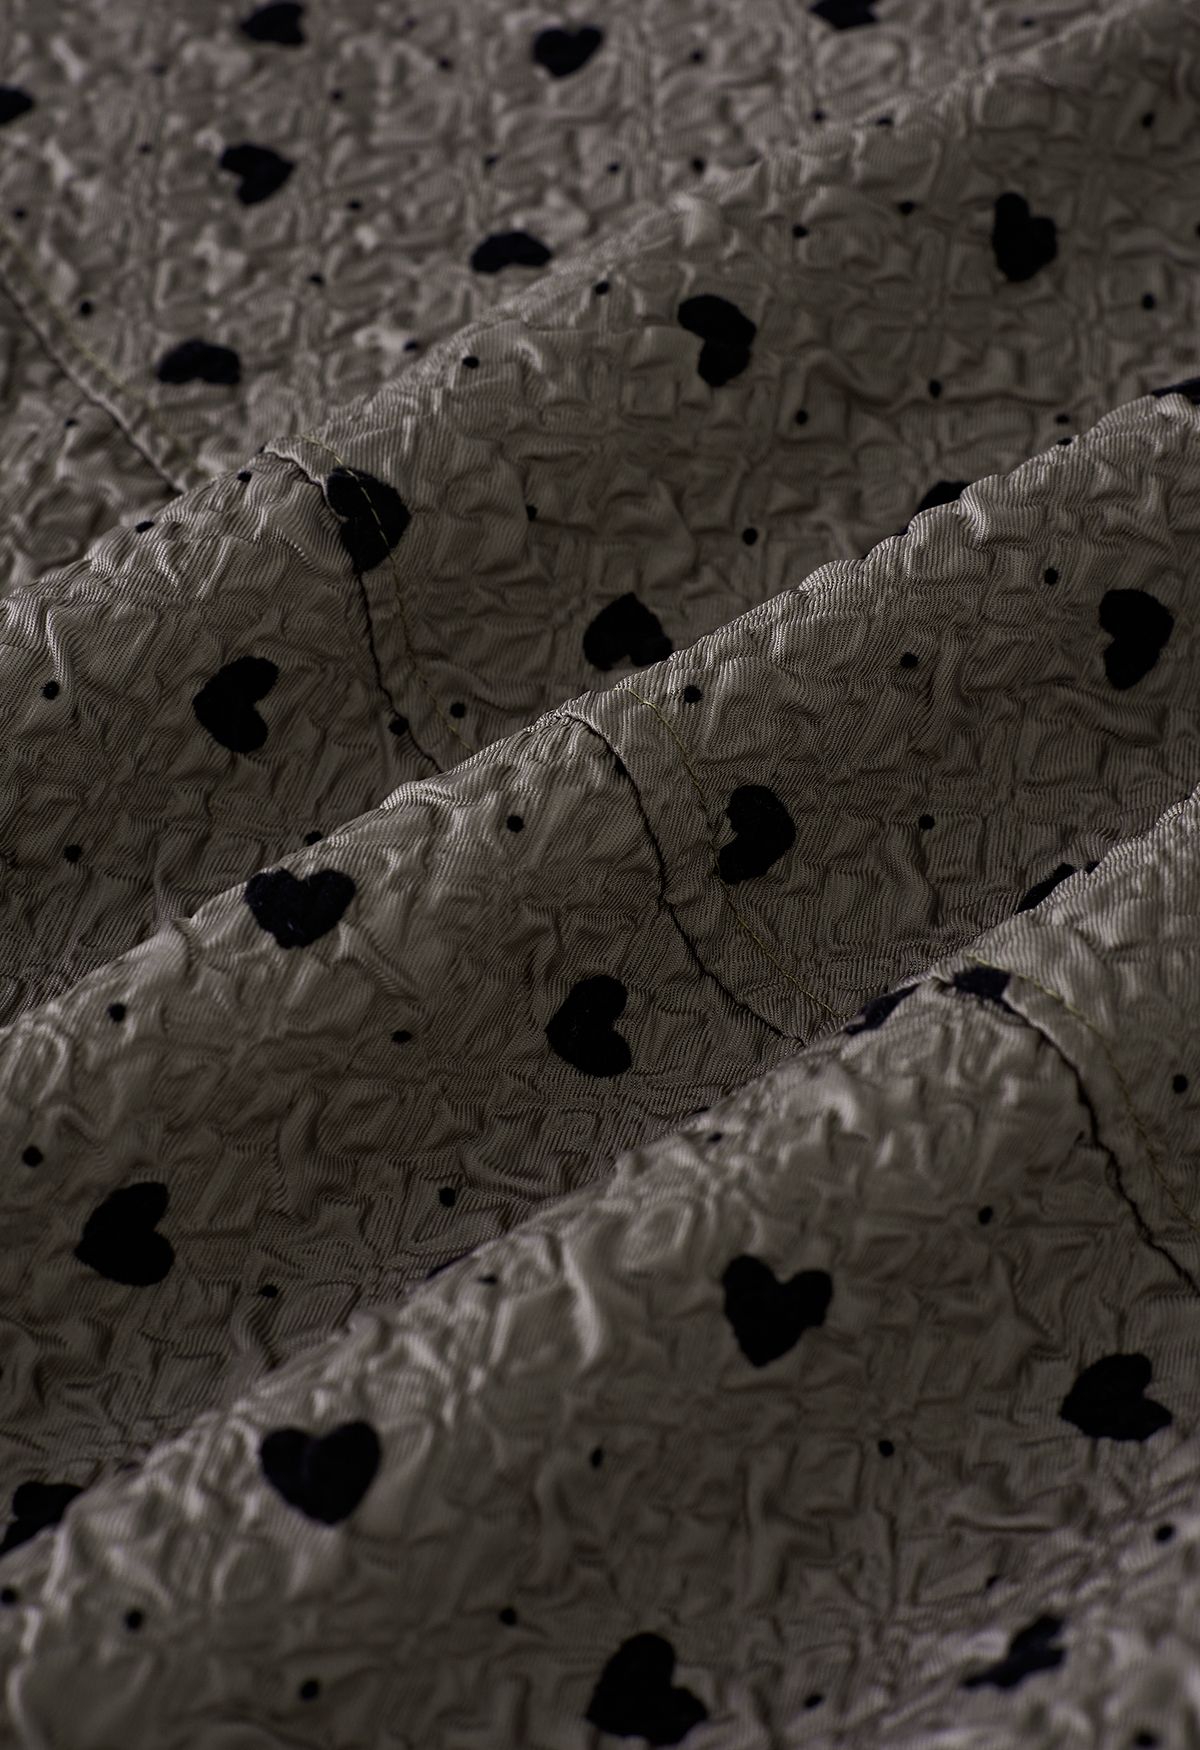 Velvet Heart Embossed Texture Midi Skirt in Taupe